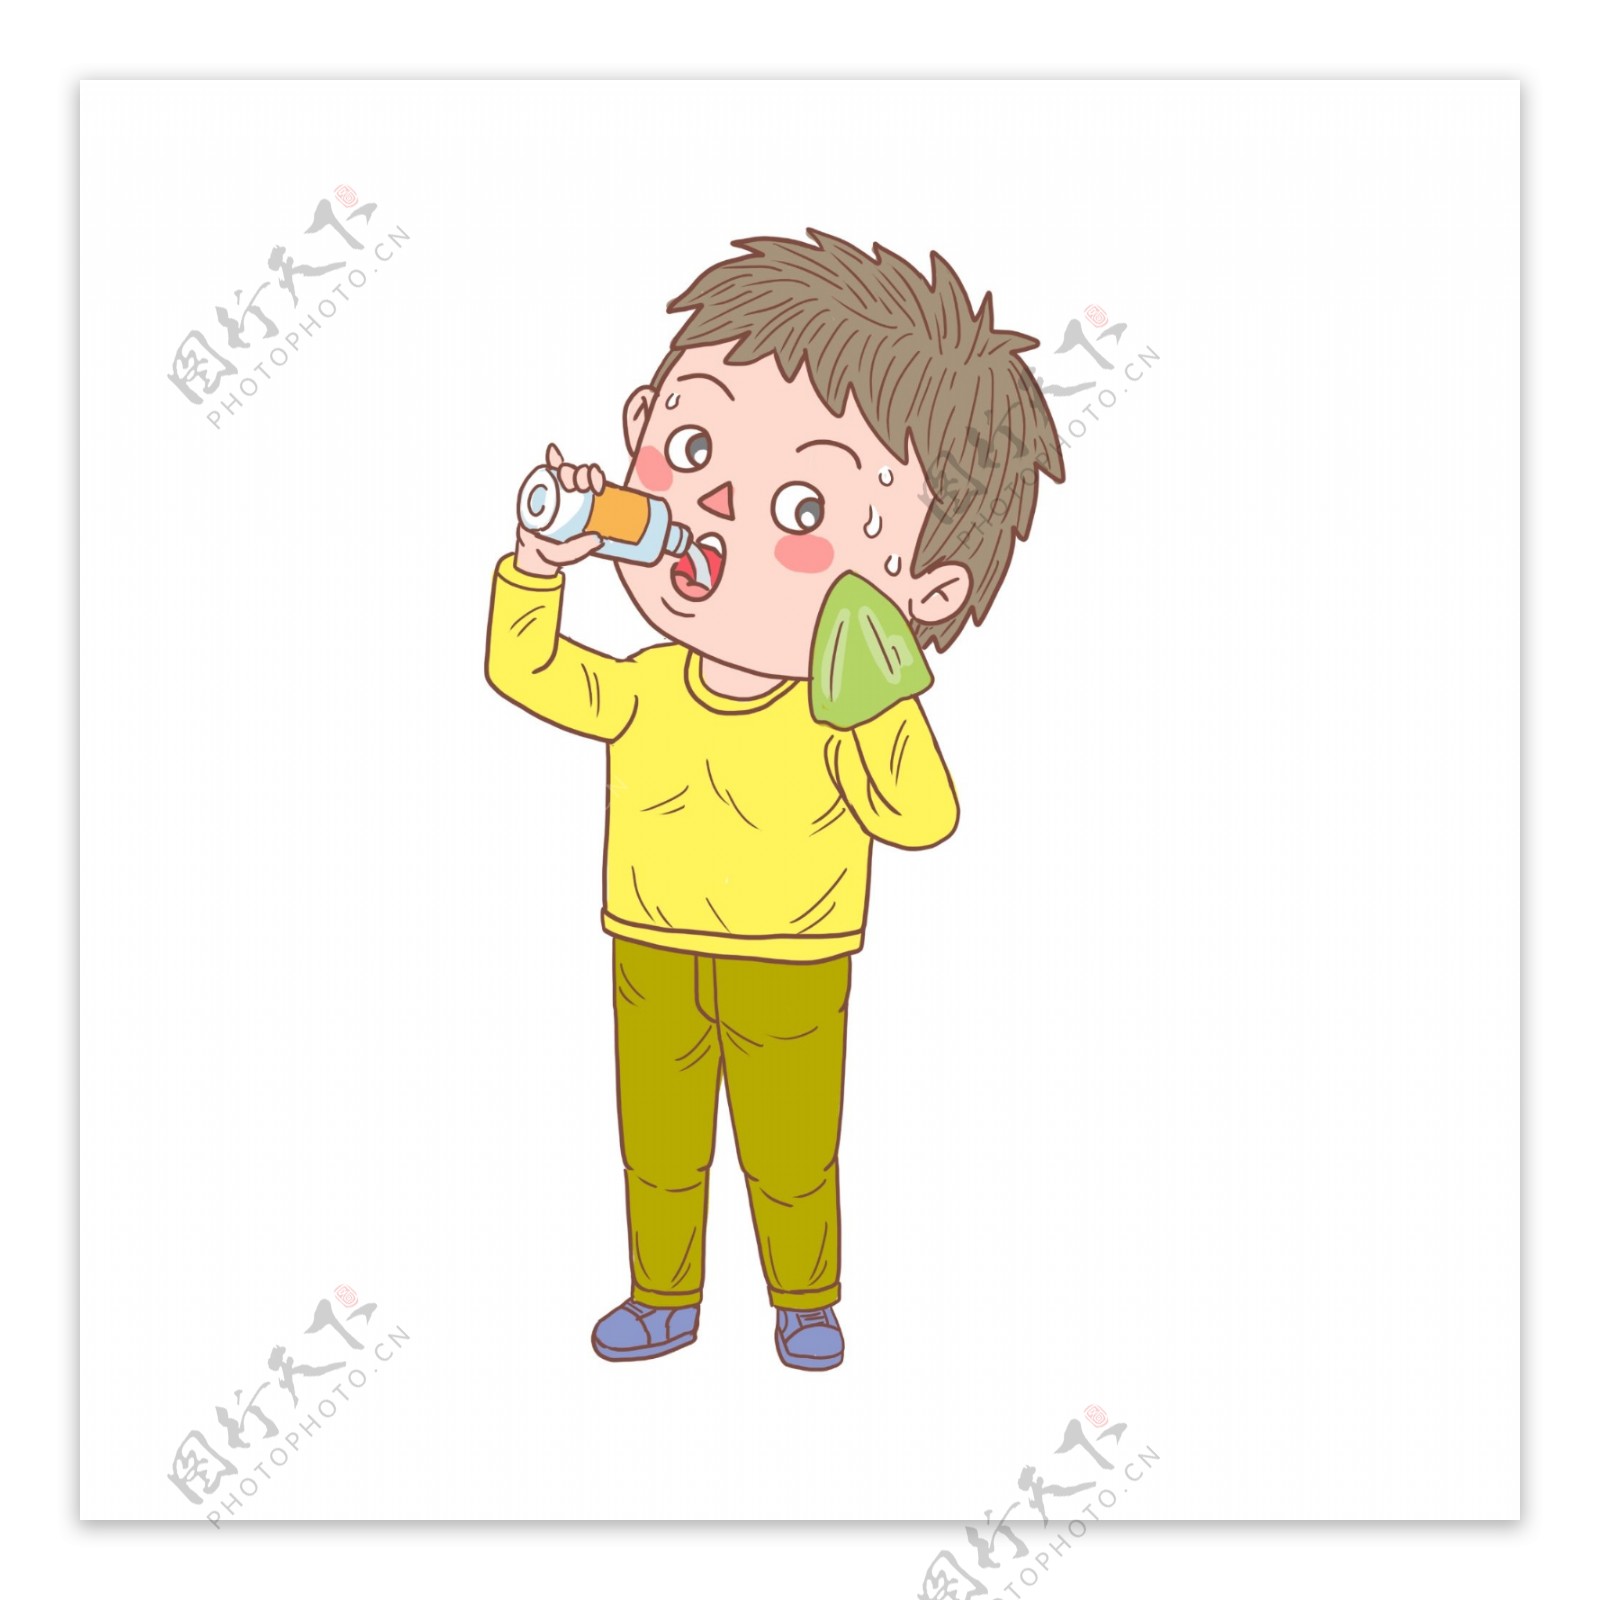 卡通手绘人物喝水擦汗男孩